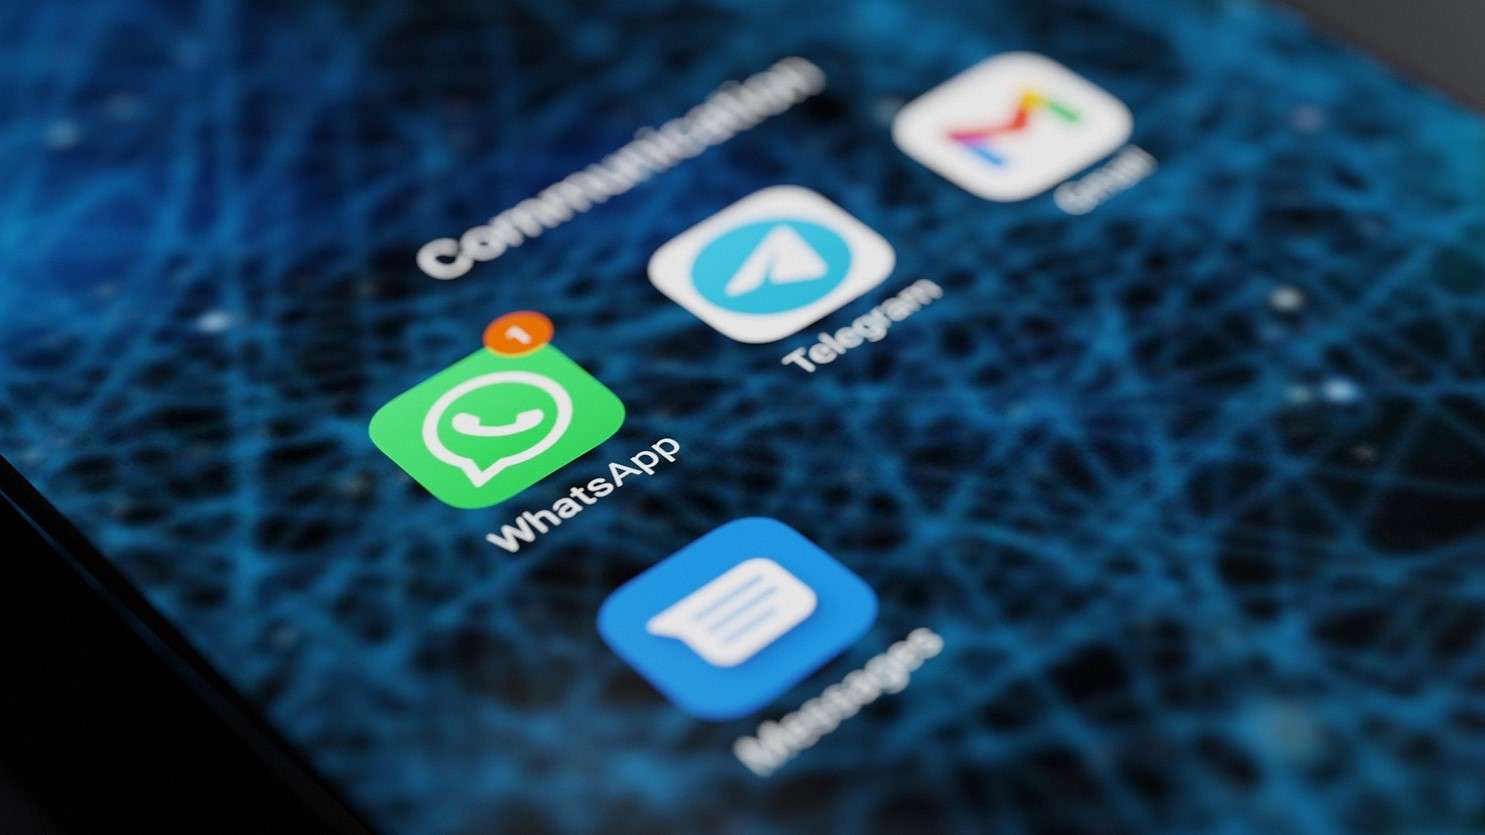 WhatsApp, buono spesa di Esselunga da 500€: è solo l'ennesima truffa